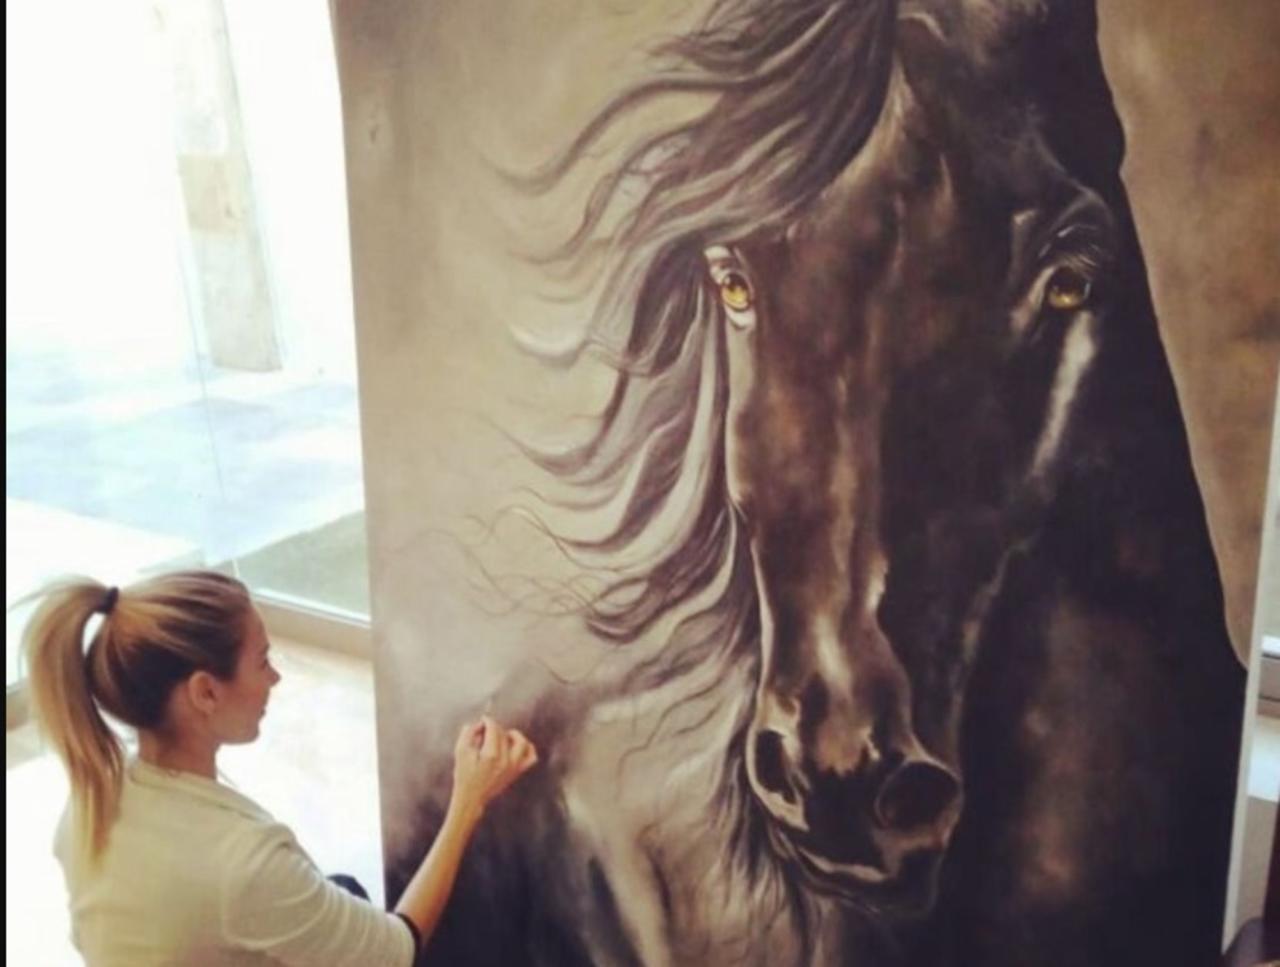 Con una inspiración montada en su pasión por los caballos, Alejandra Garza Gutiérrez acentuó su interés por el arte durante una estancia universitaria en San Sebastián, España.